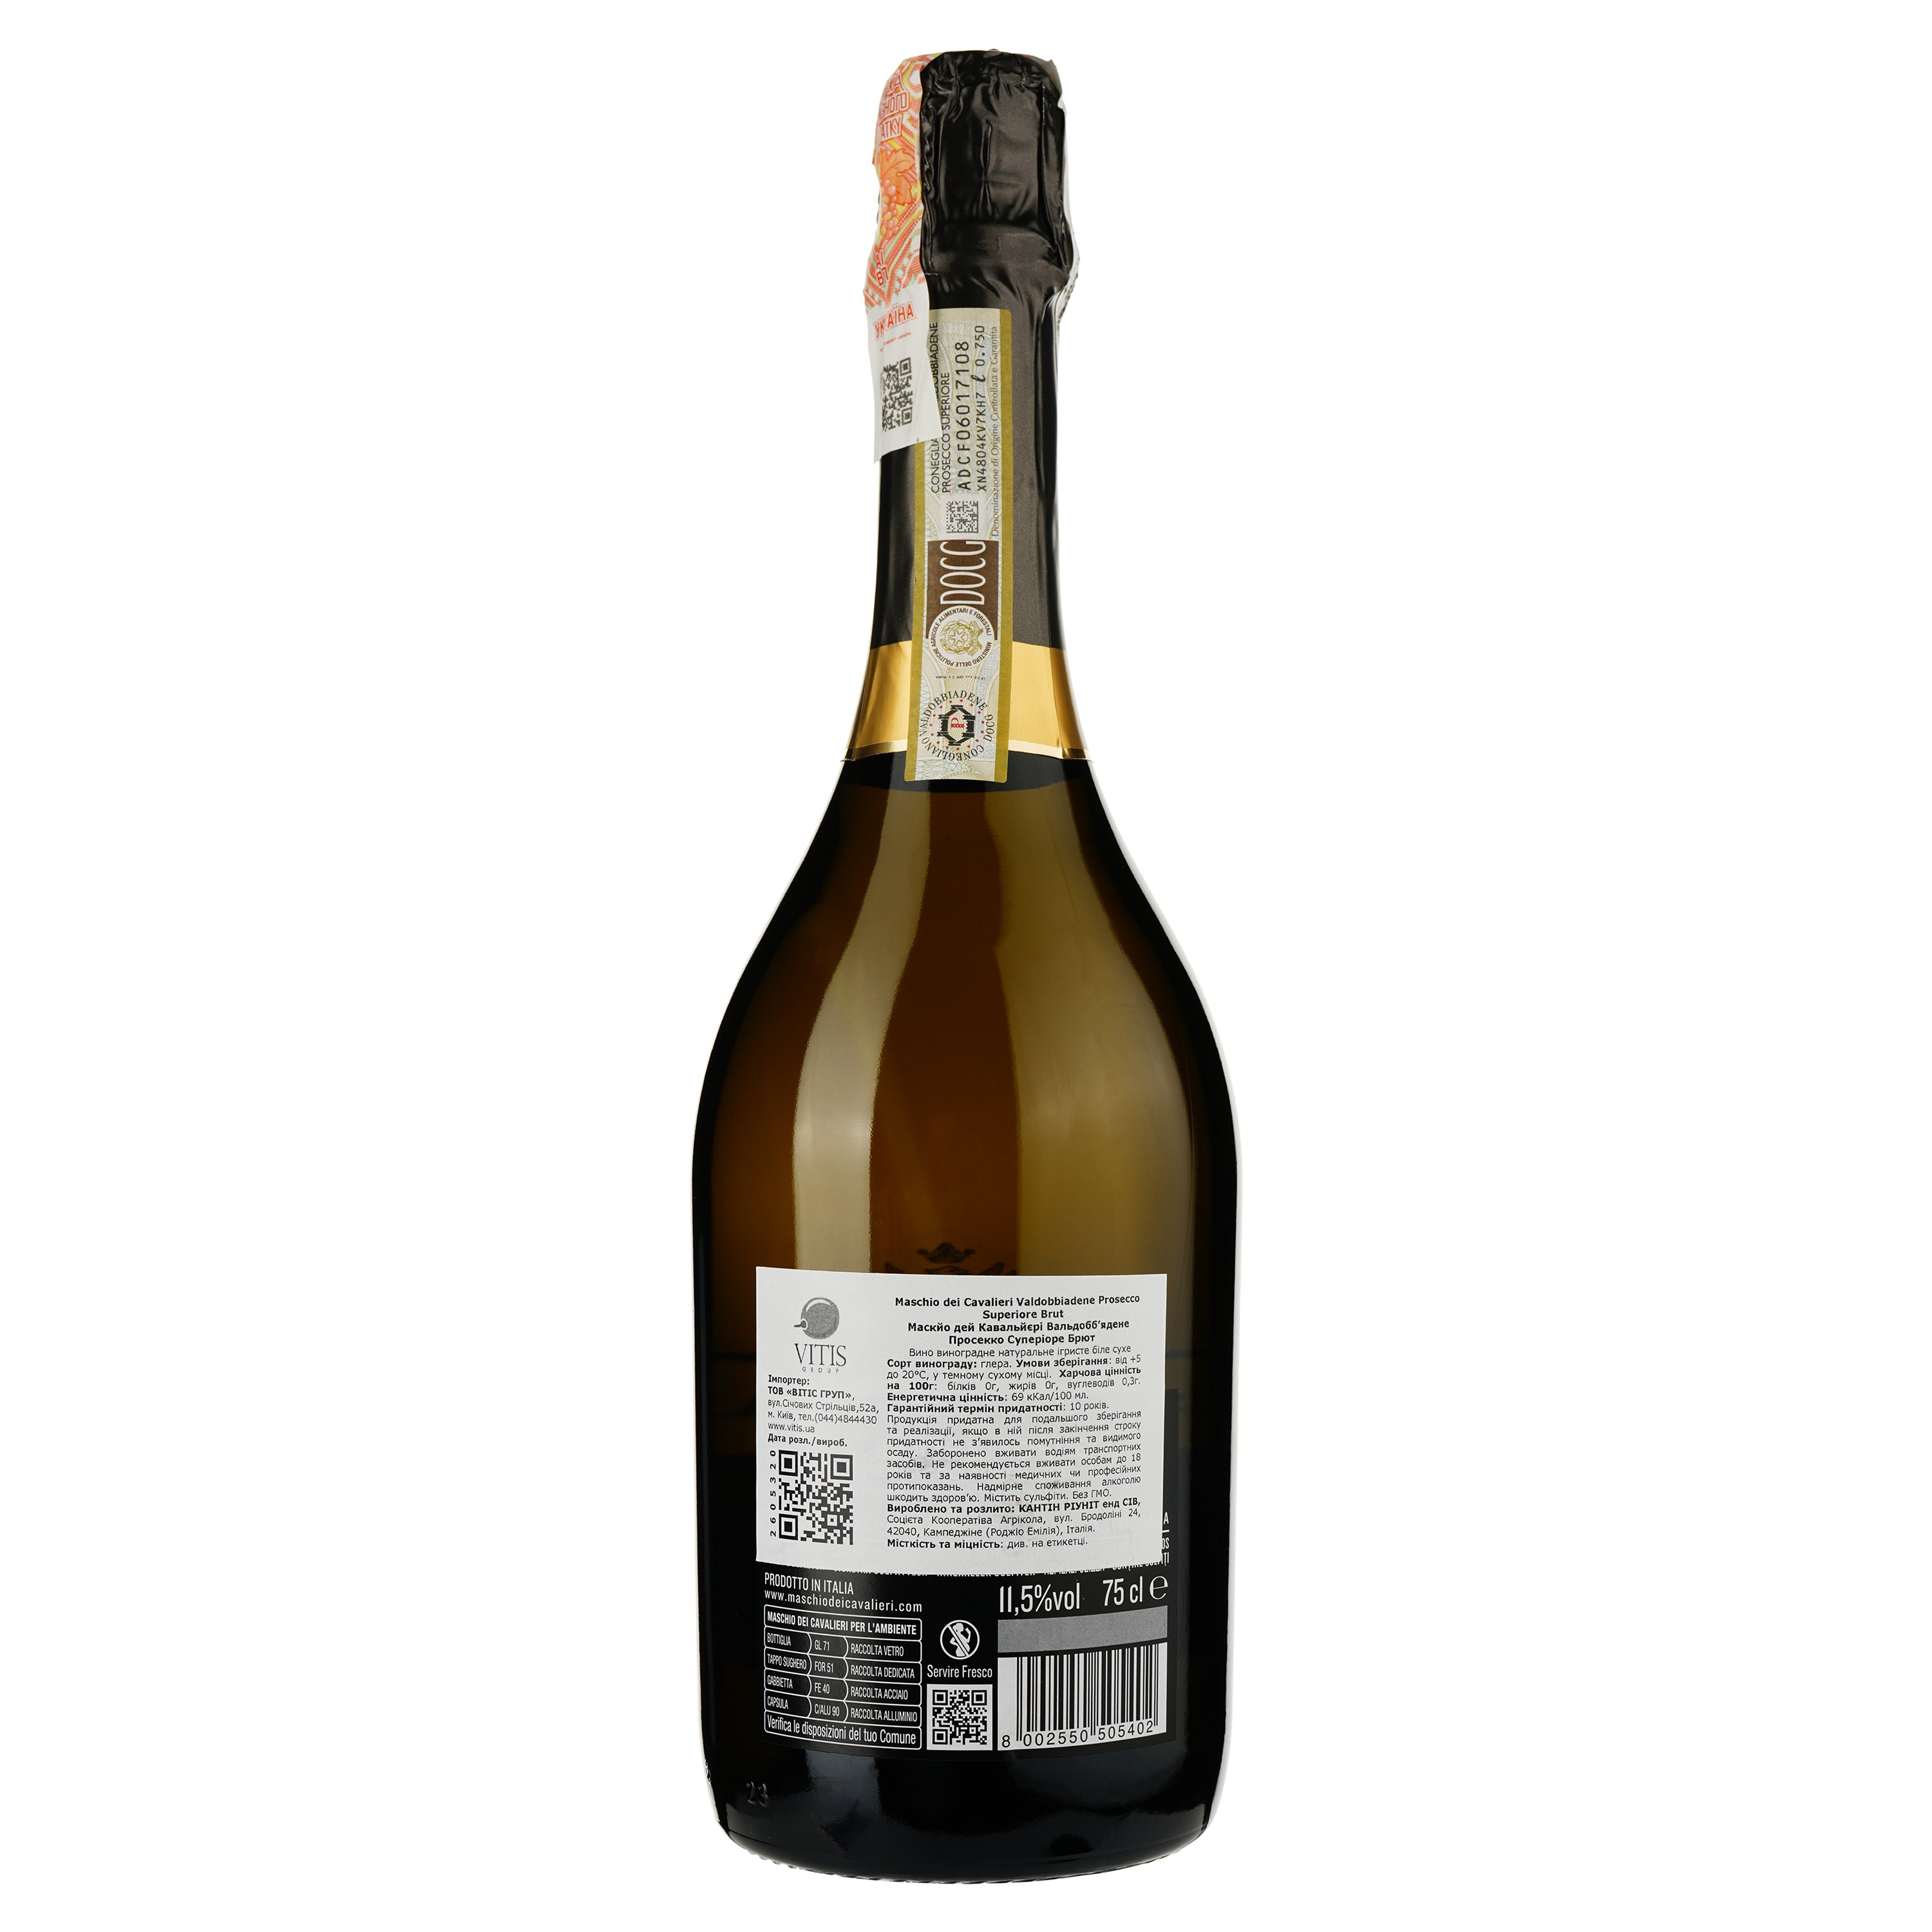 Вино игристое Maschio dei Cavalieri Prosecco Superiore Brut Valdobbiadene DOCG, белое, брют, 0,75 л - фото 2